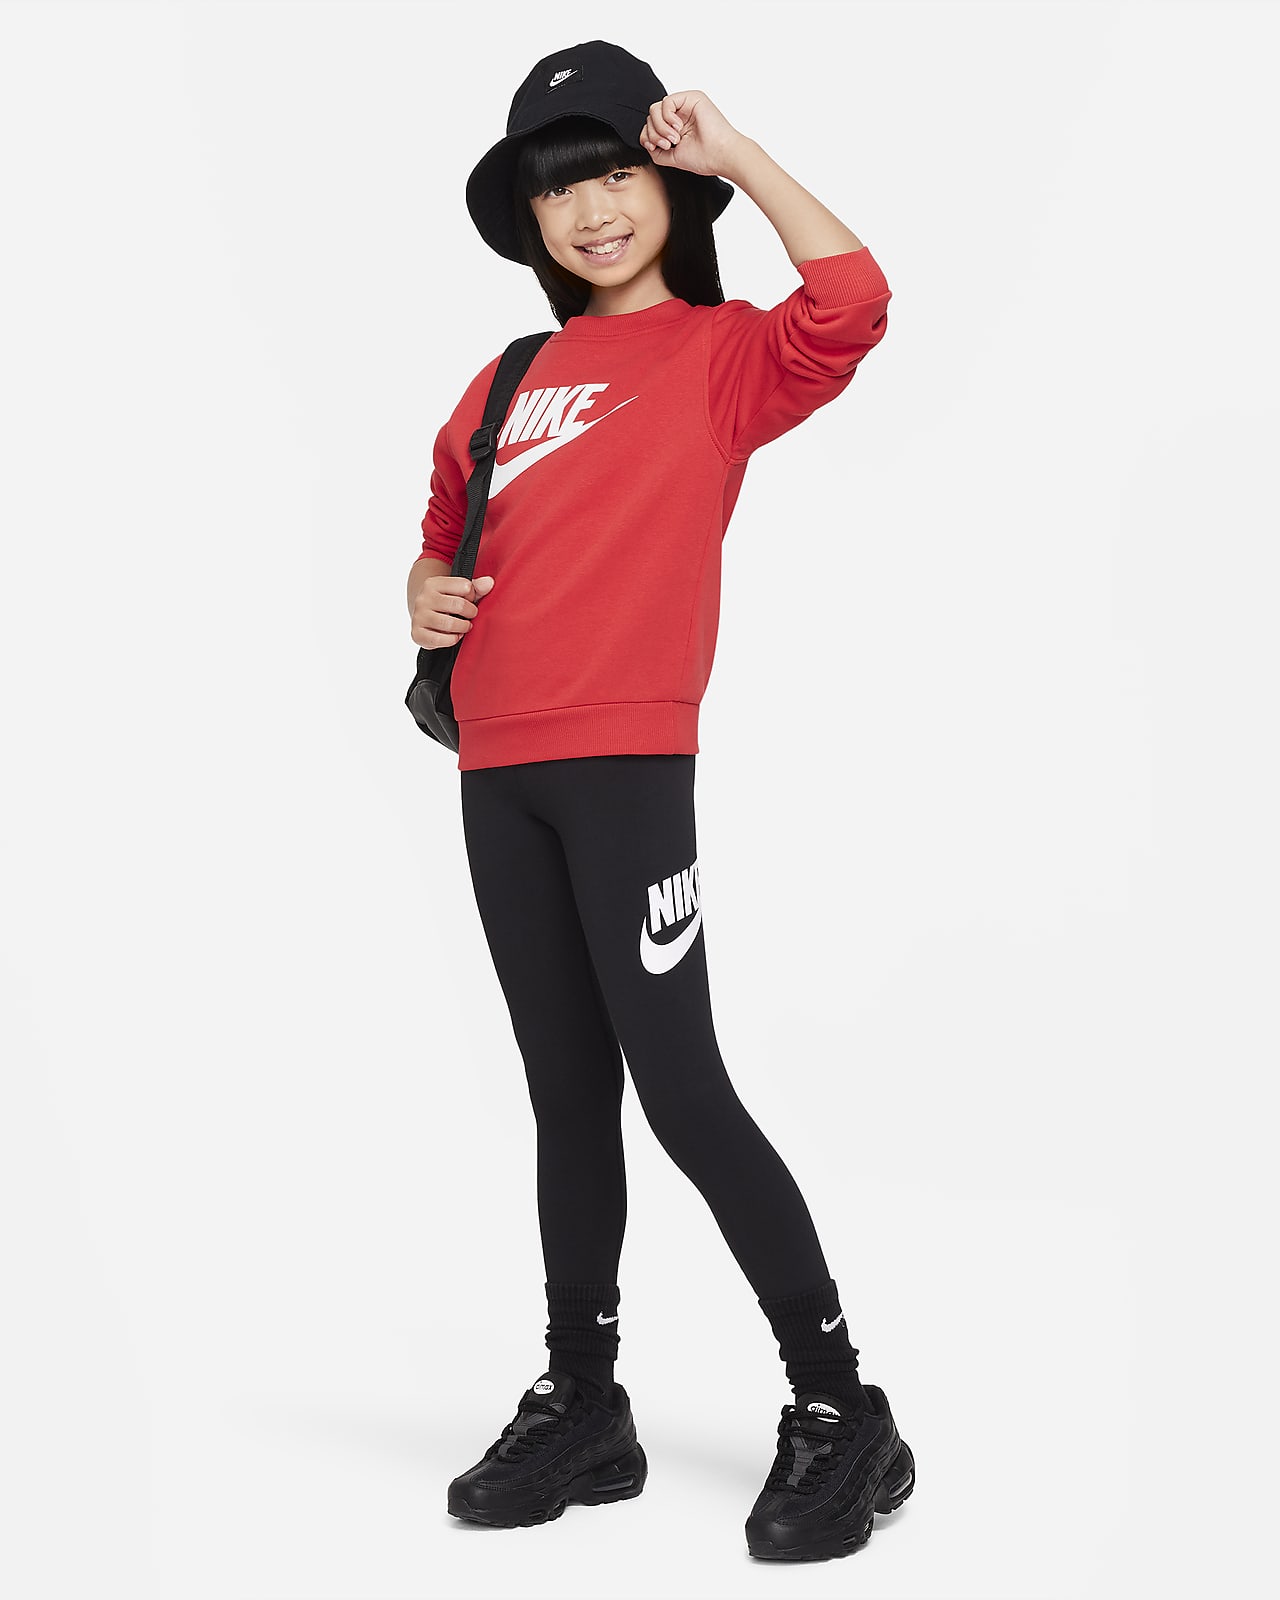 Nike Pro Girls Leggings – SportsPower Australia